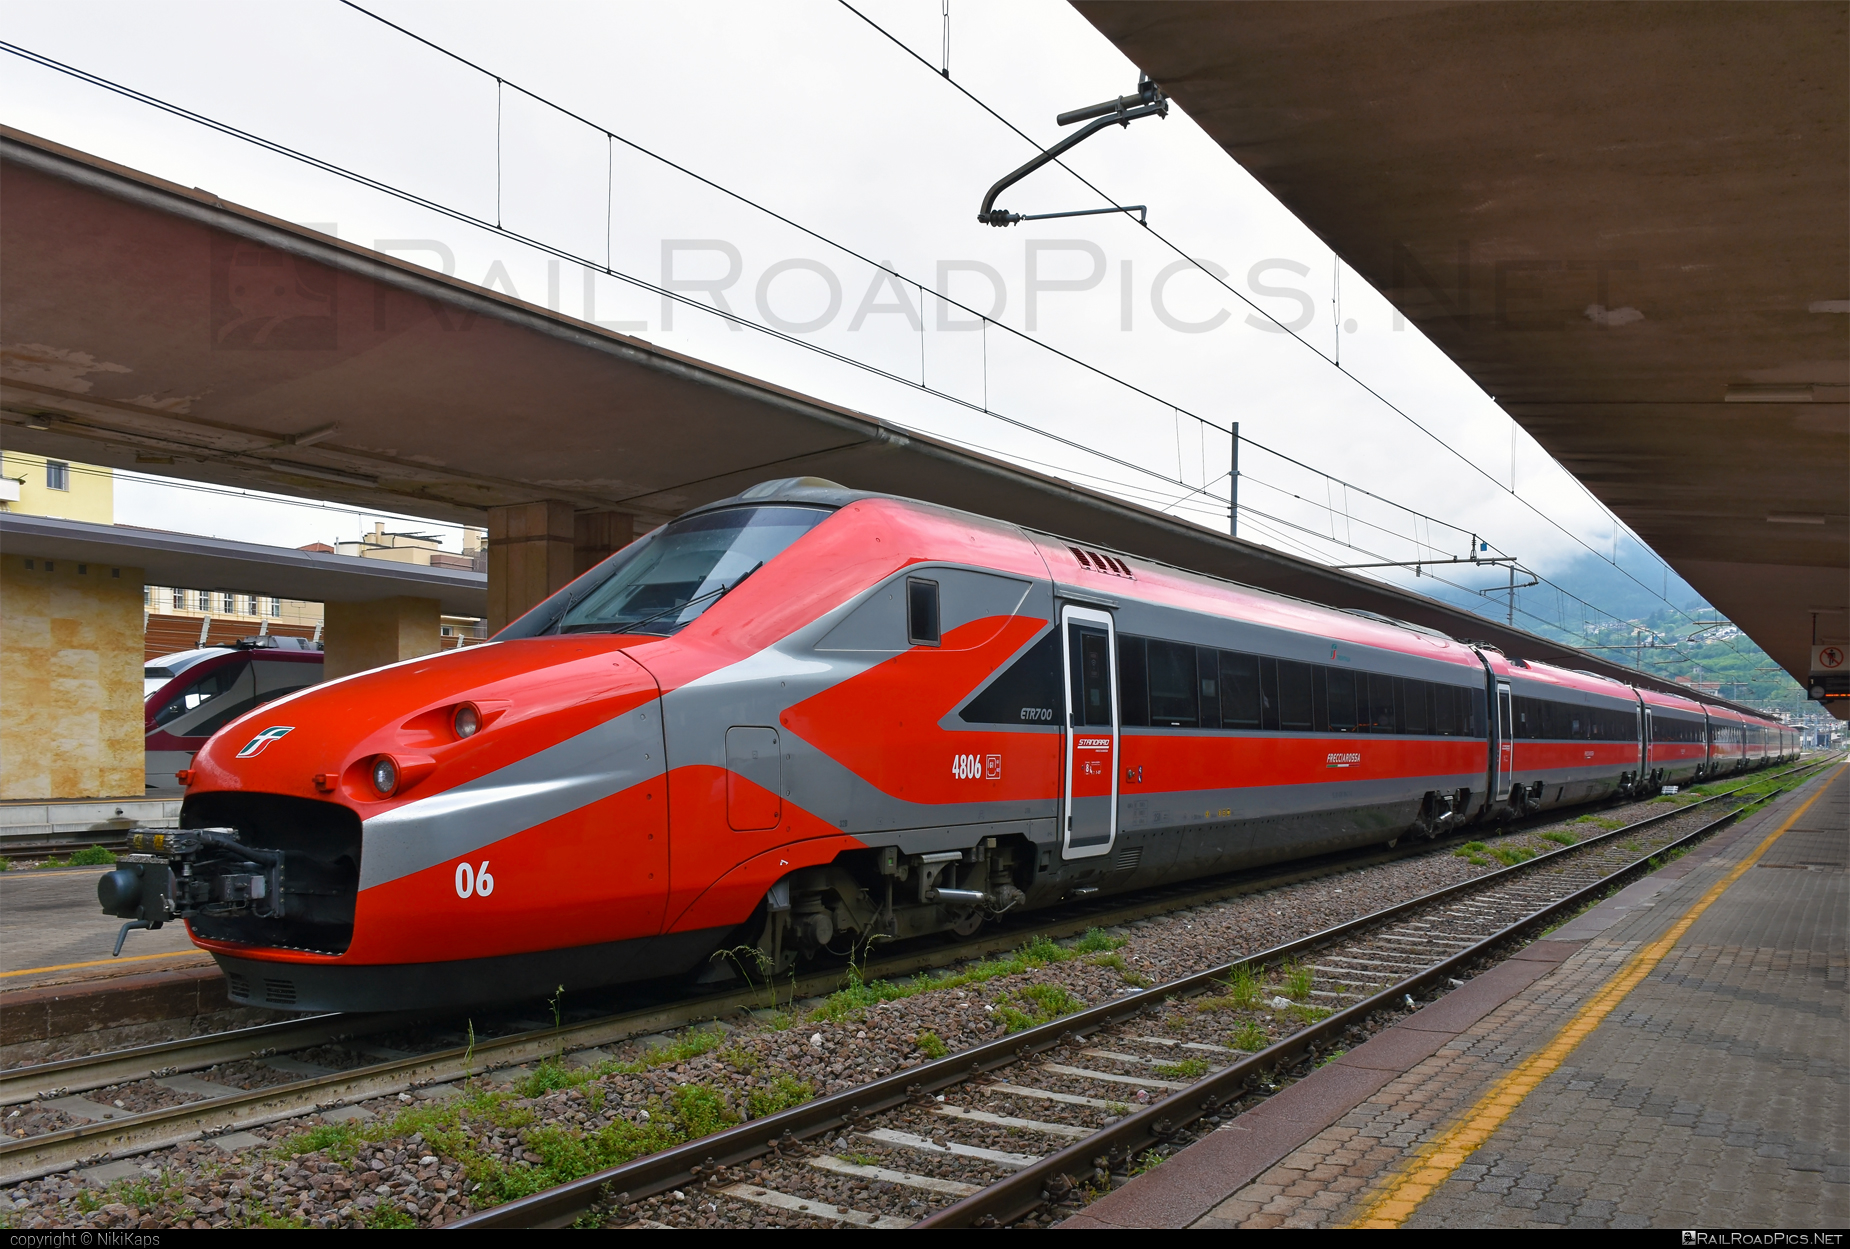 AnsaldoBreda ETR.700 - 4806 operated by Trenitalia S.p.A. #ansaldoBreda #ansaldoBredaEtr700 #etr700 #ferroviedellostato #frecciarossa #fs #fsitaliane #lefrecce #trenitalia #trenitaliaspa